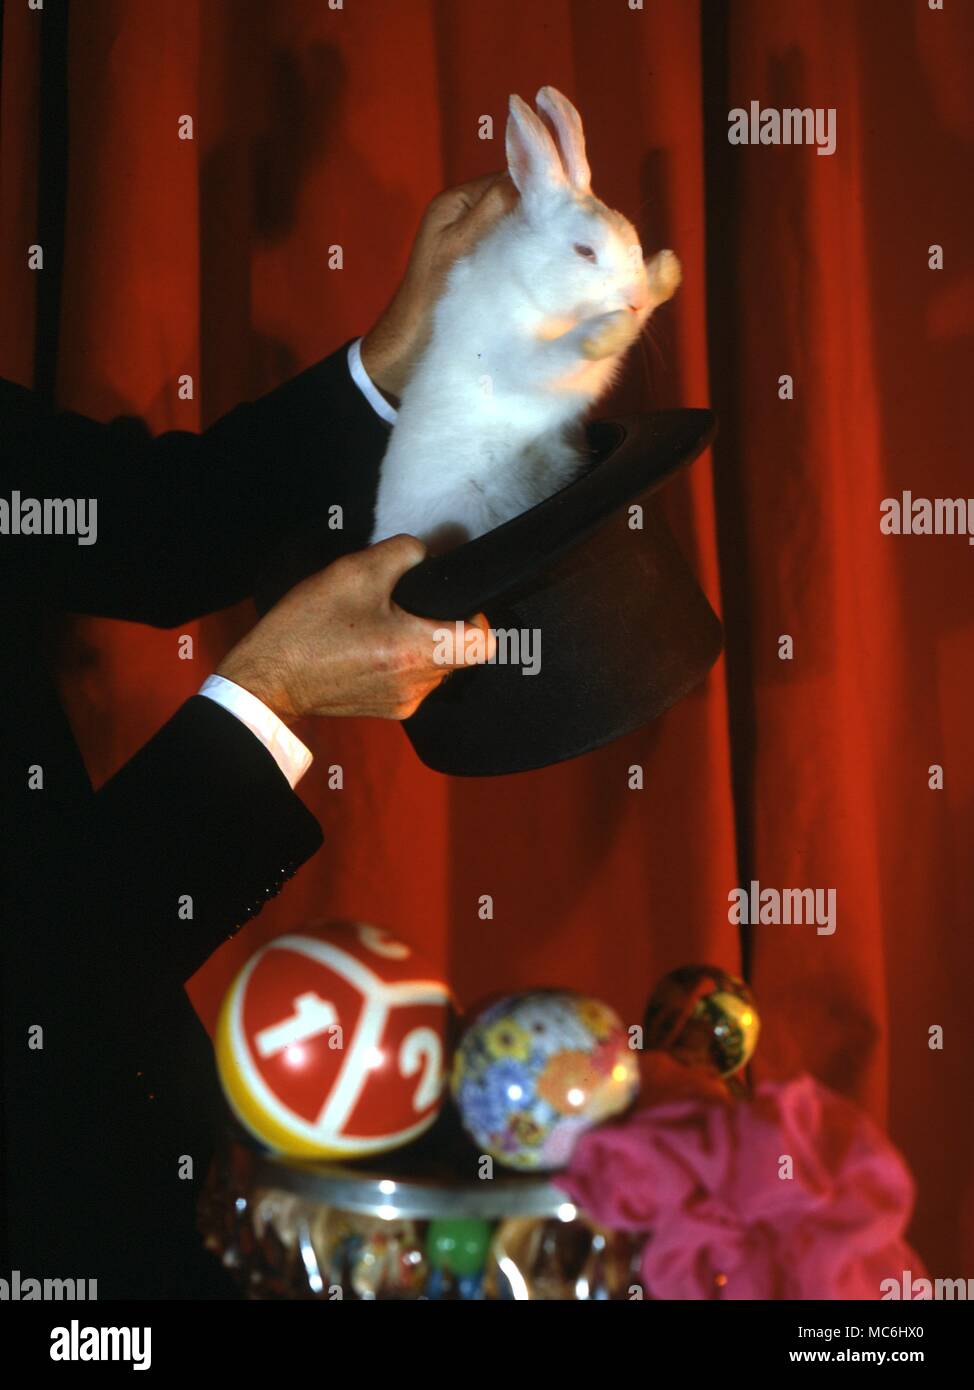 Il mago solleva un coniglio bianco da un cappello a cilindro che ha appena dimostrato di essere vuoto. Foto Stock